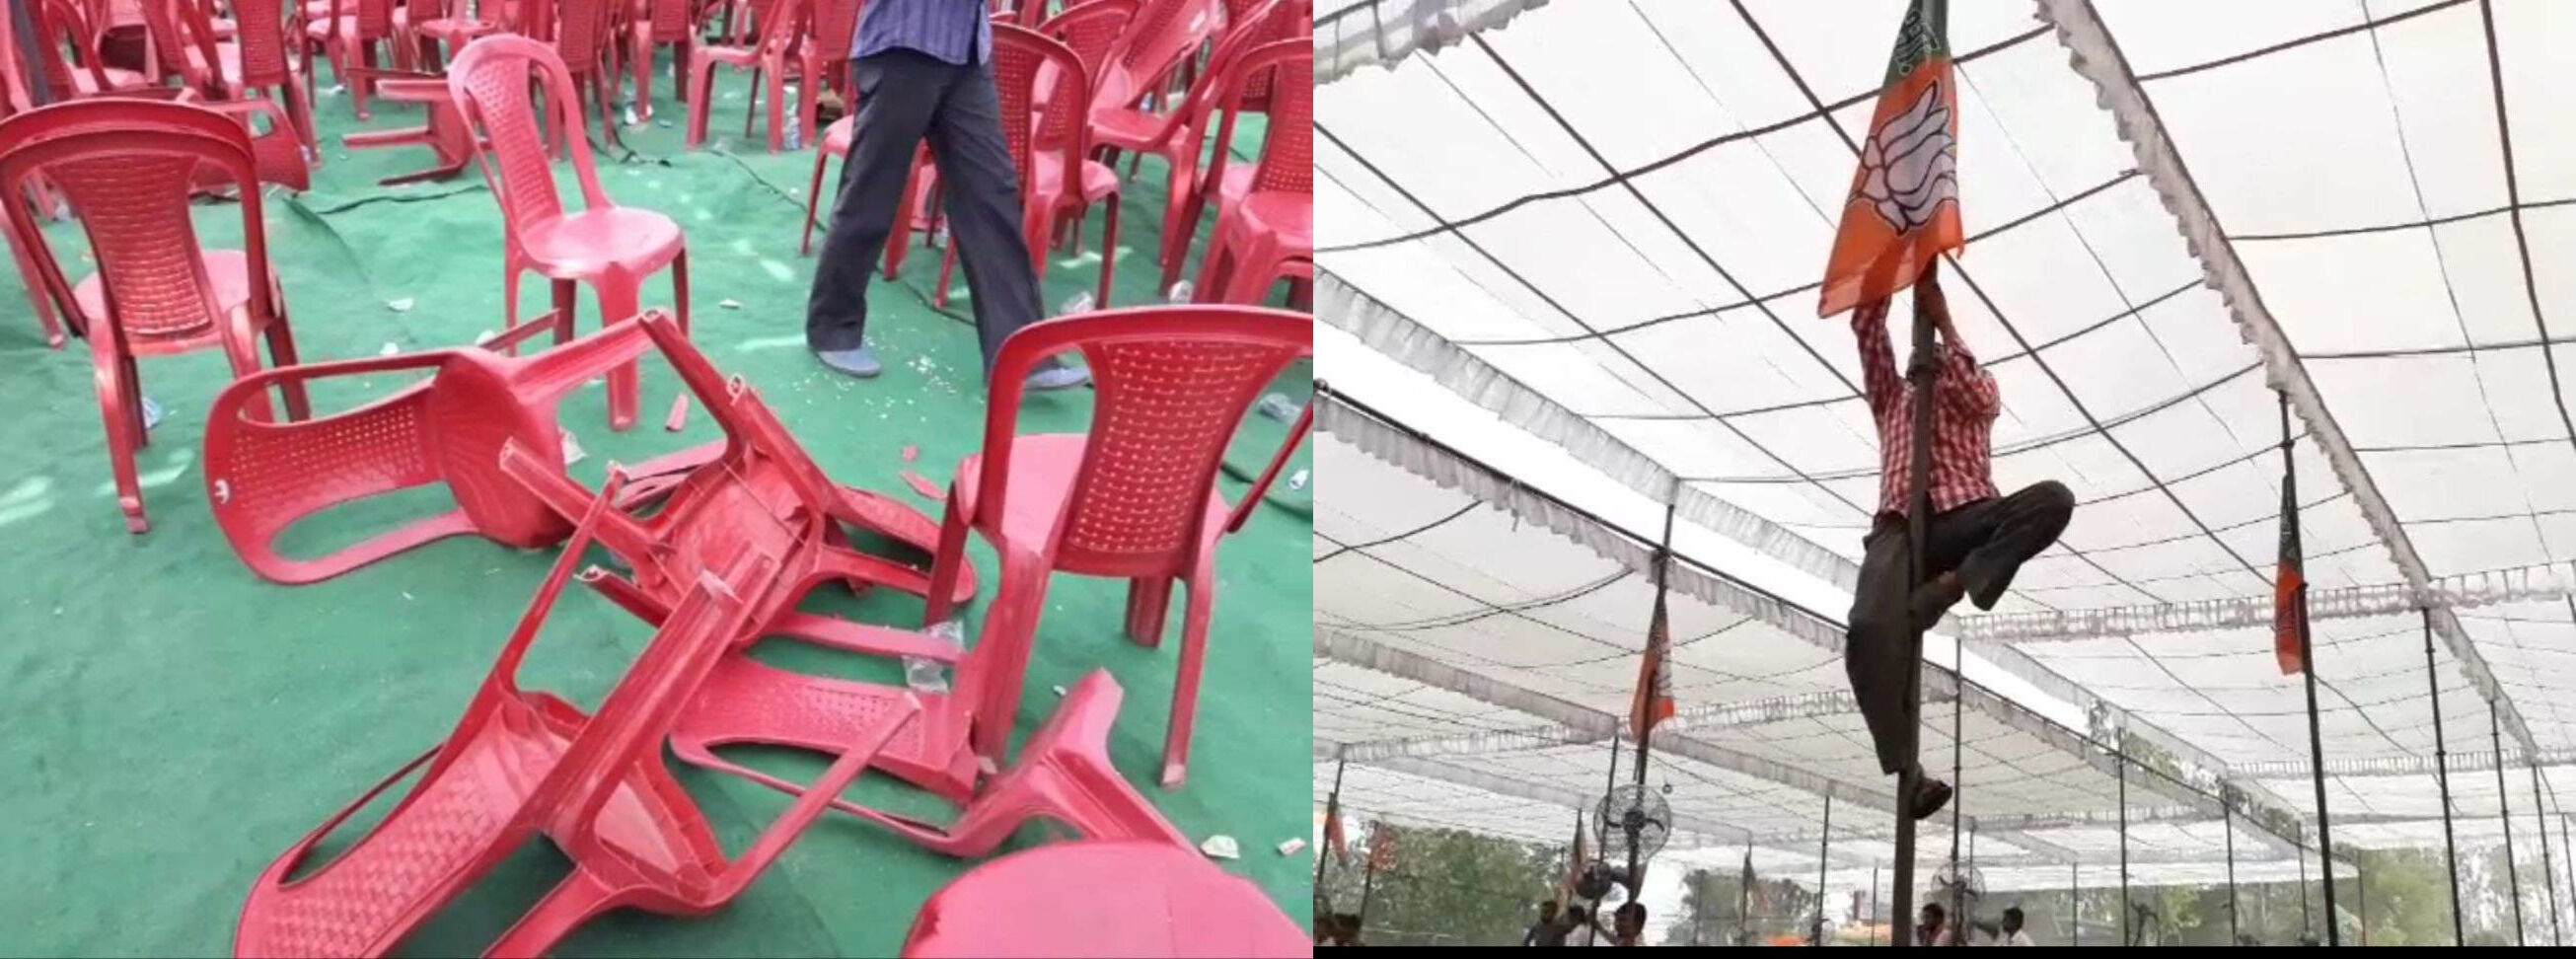 कैराना उप चुनावः योगी की जनसभा में समर्थक उखाड़ ले गए झंडे तोड़ डाली कुर्सियां, जानिए फिर क्या हुआ